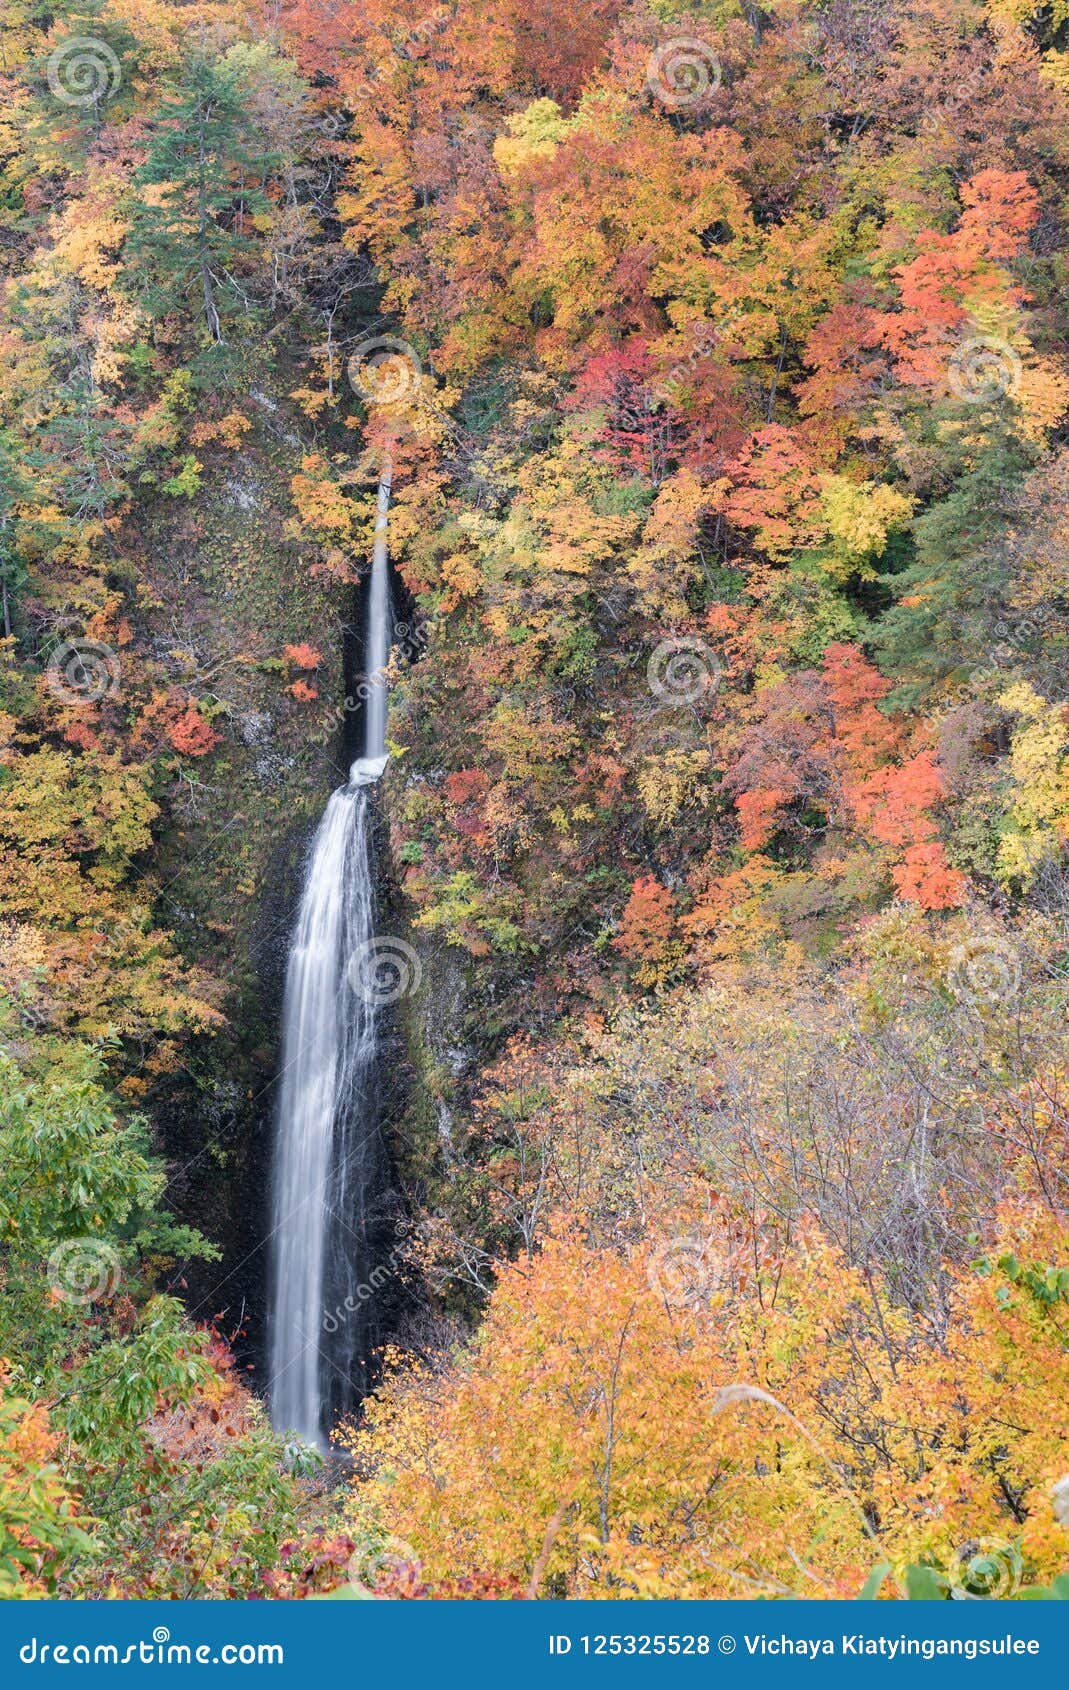 tsumijikura taki waterfall fukushima